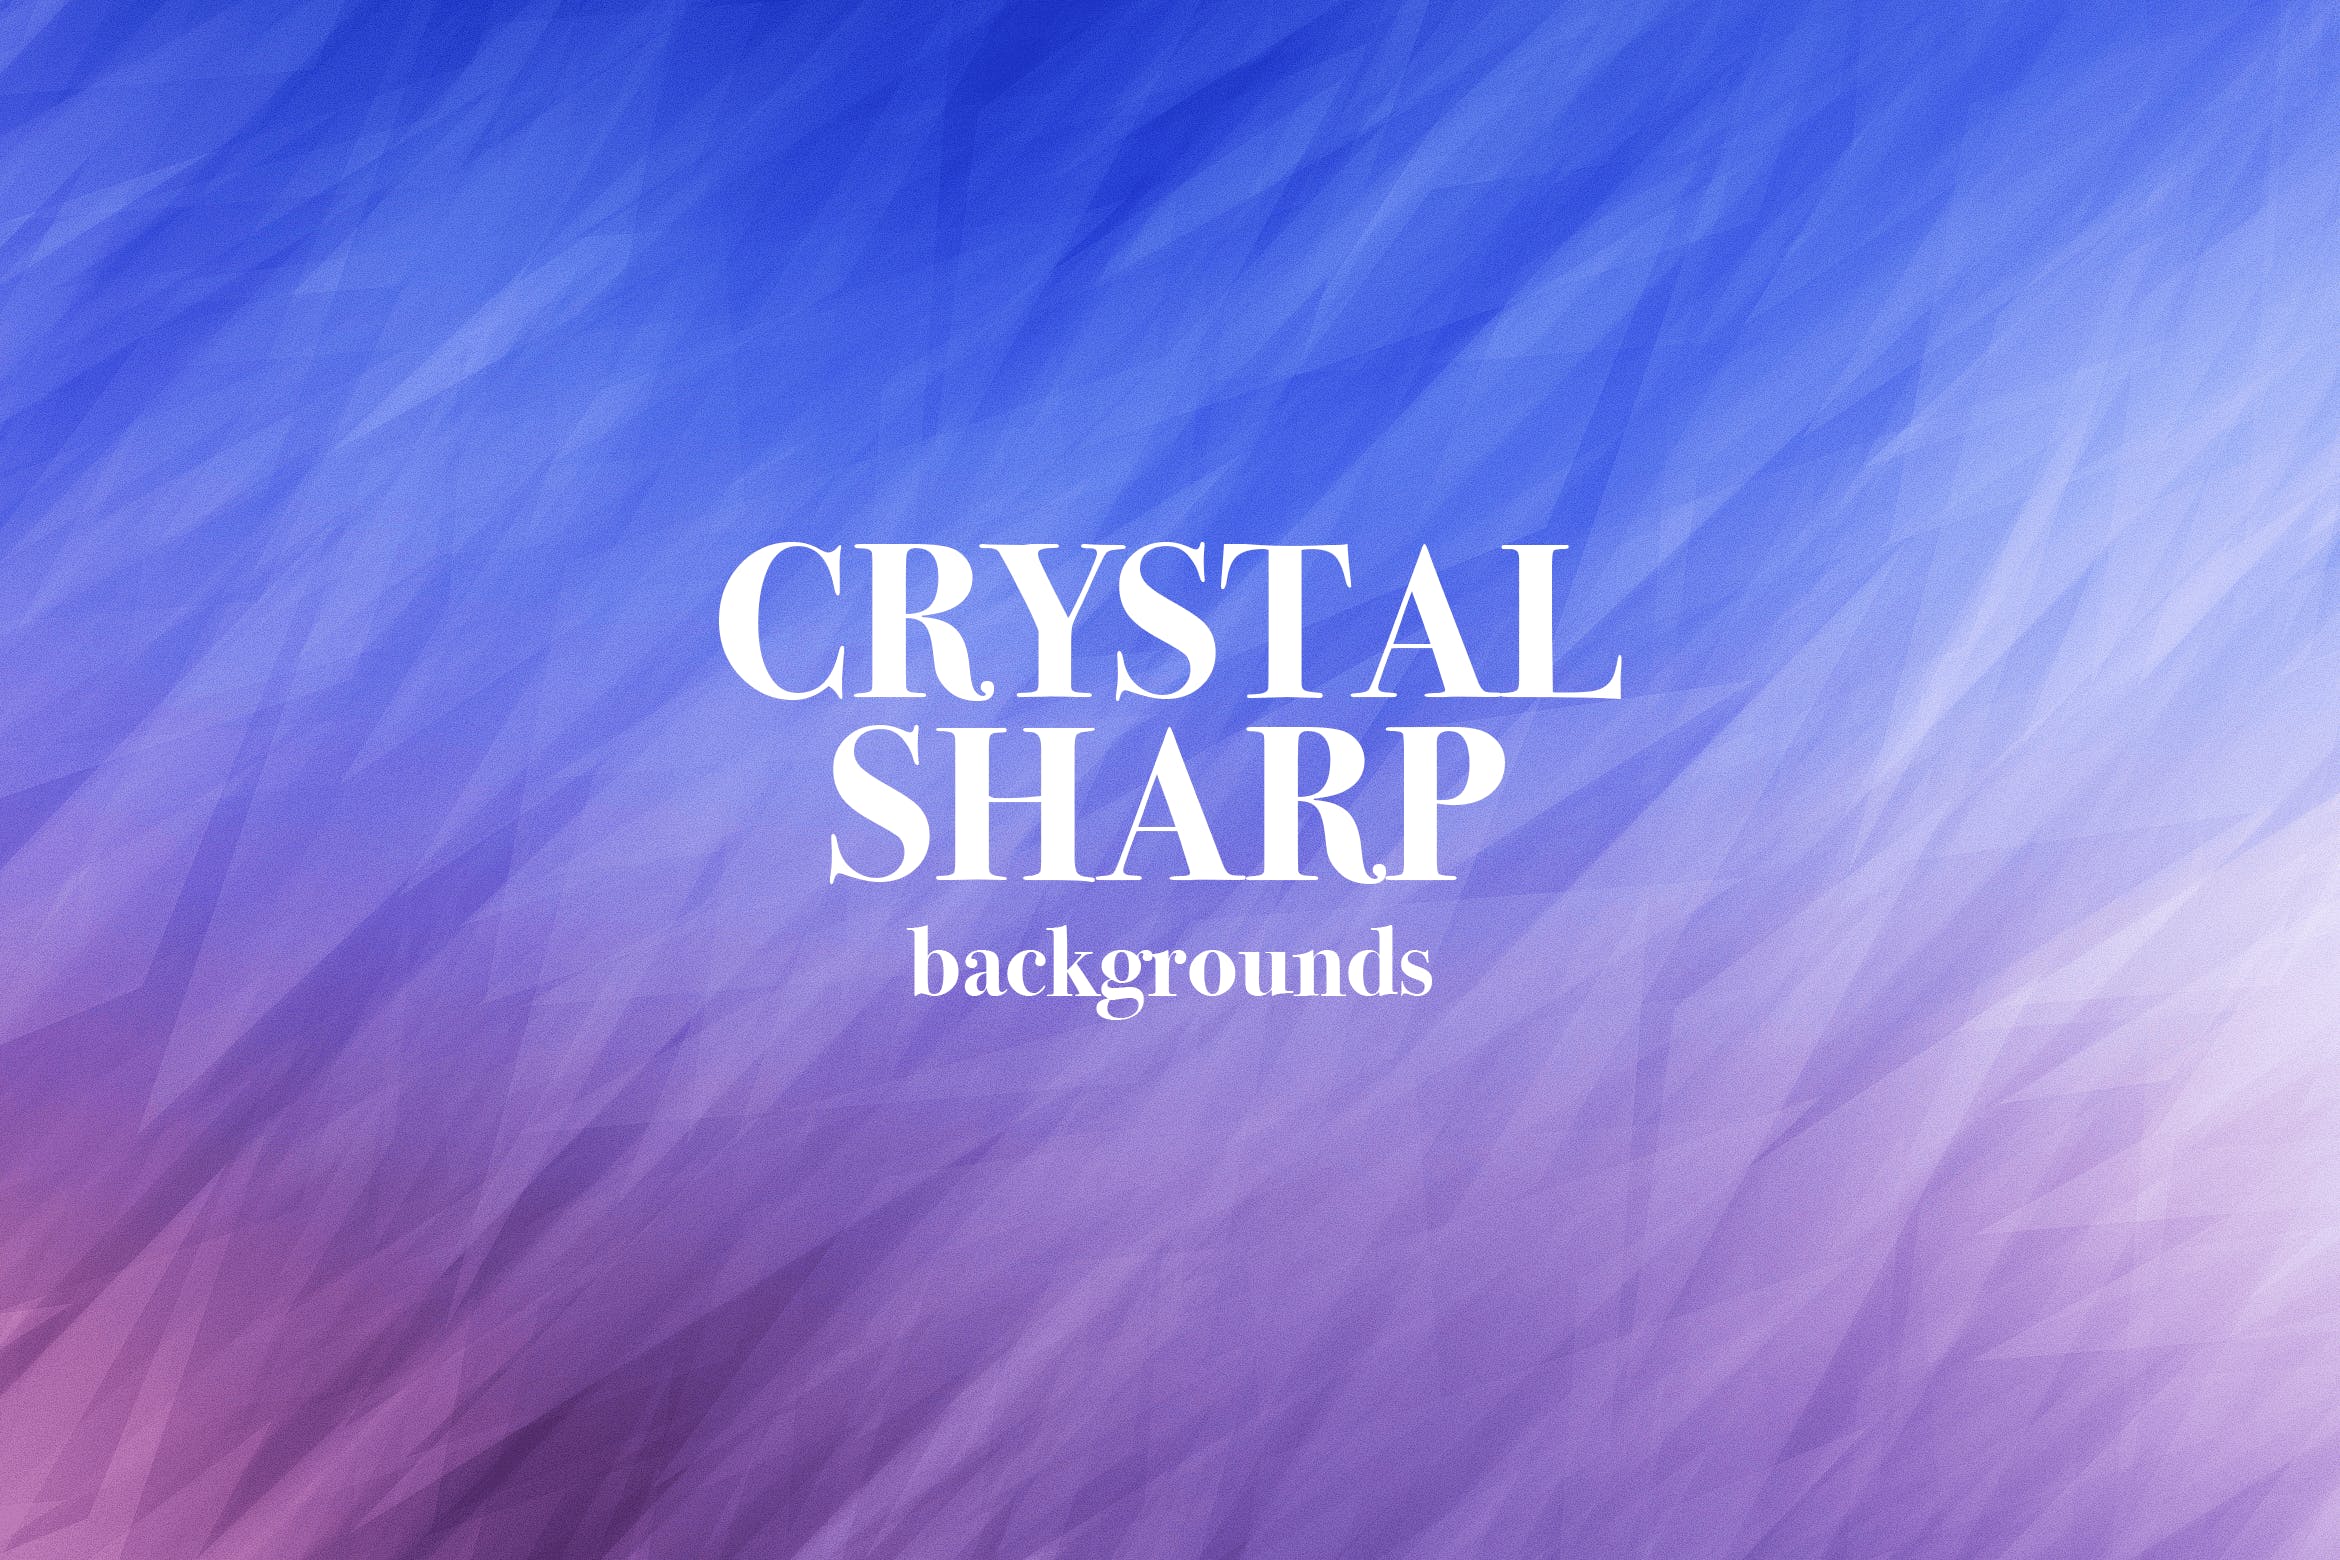 时尚视觉艺术效果水晶反射抽象背景素材 Crystal Sharp Backgrounds插图